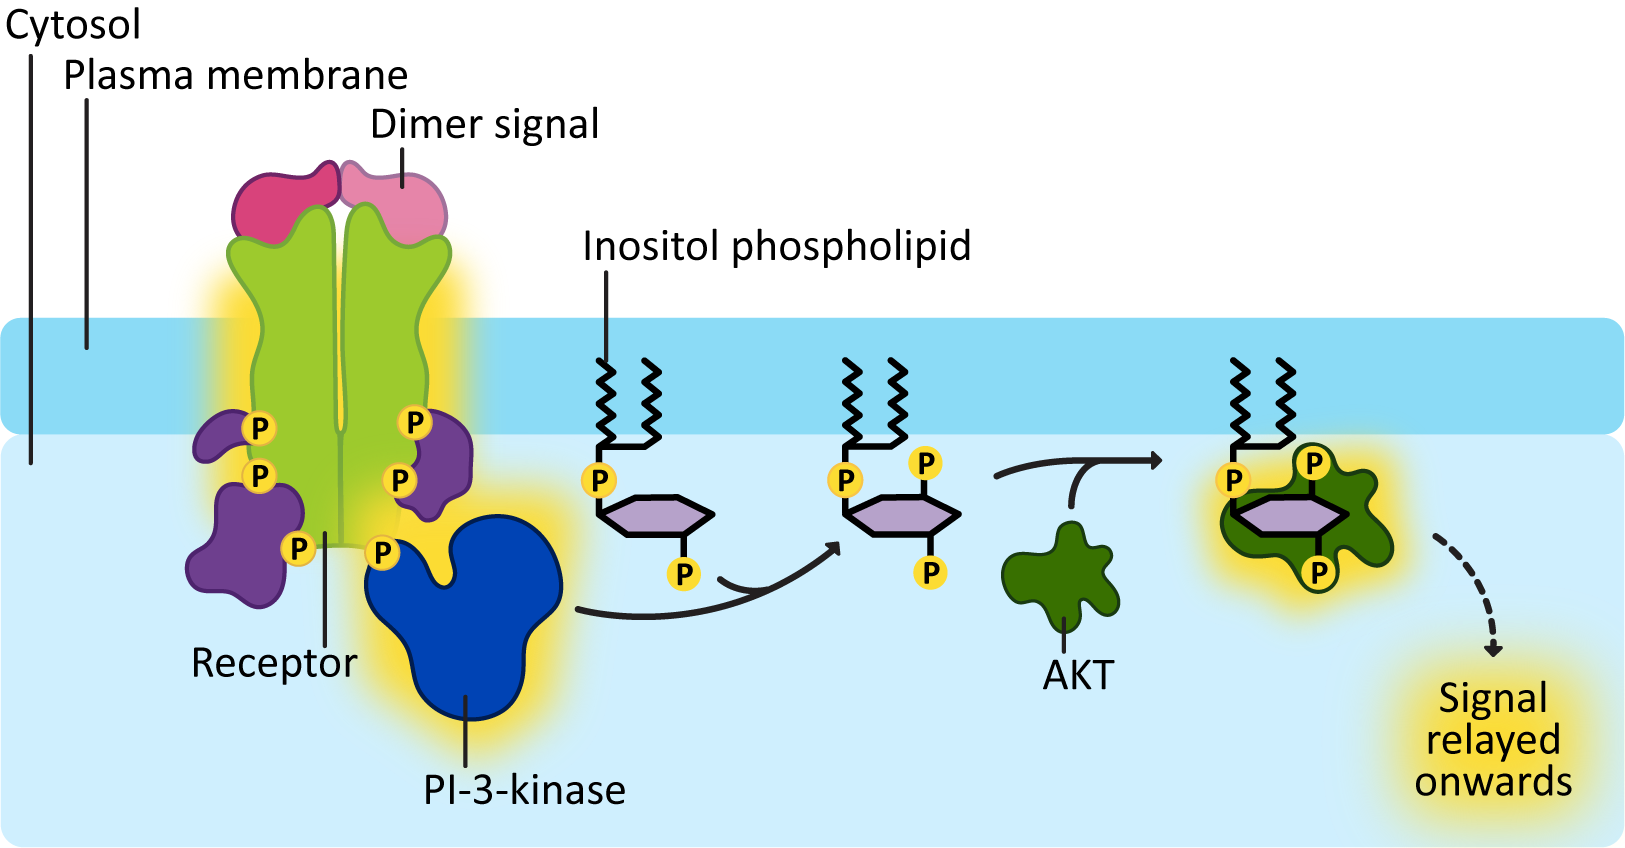 Mechanism for PI-3-kinase activation